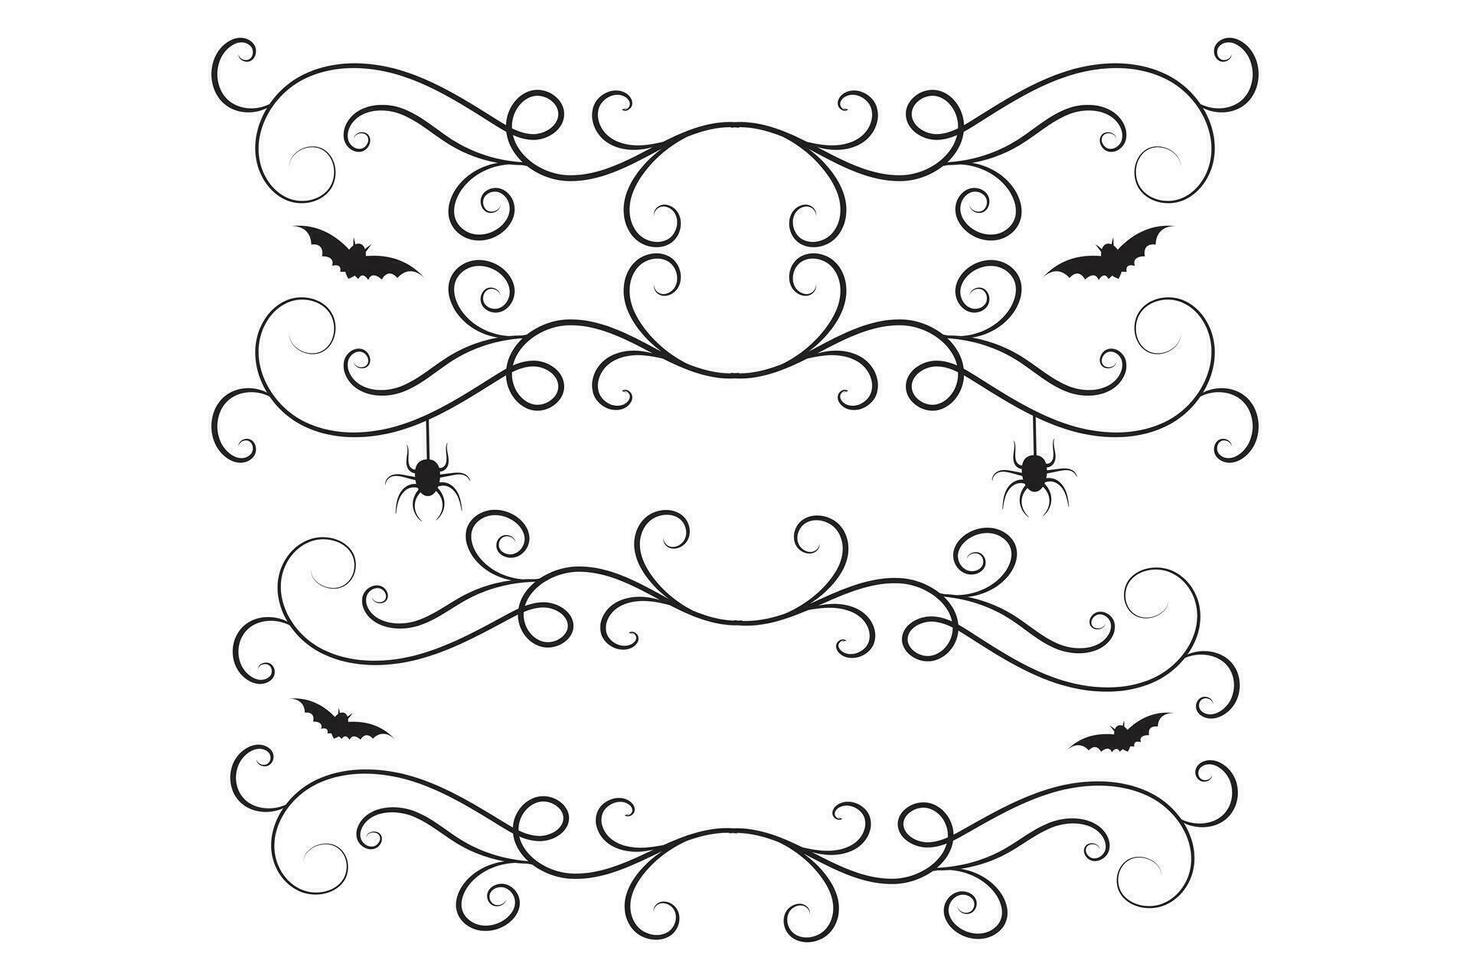 set of Halloween calligraphy victorian flourish filigree wilds swirls, vintage menu ornaments, vines spiral corner frame, decorative swirl border, bat vine scroll spider luxury swirls ornamental vector